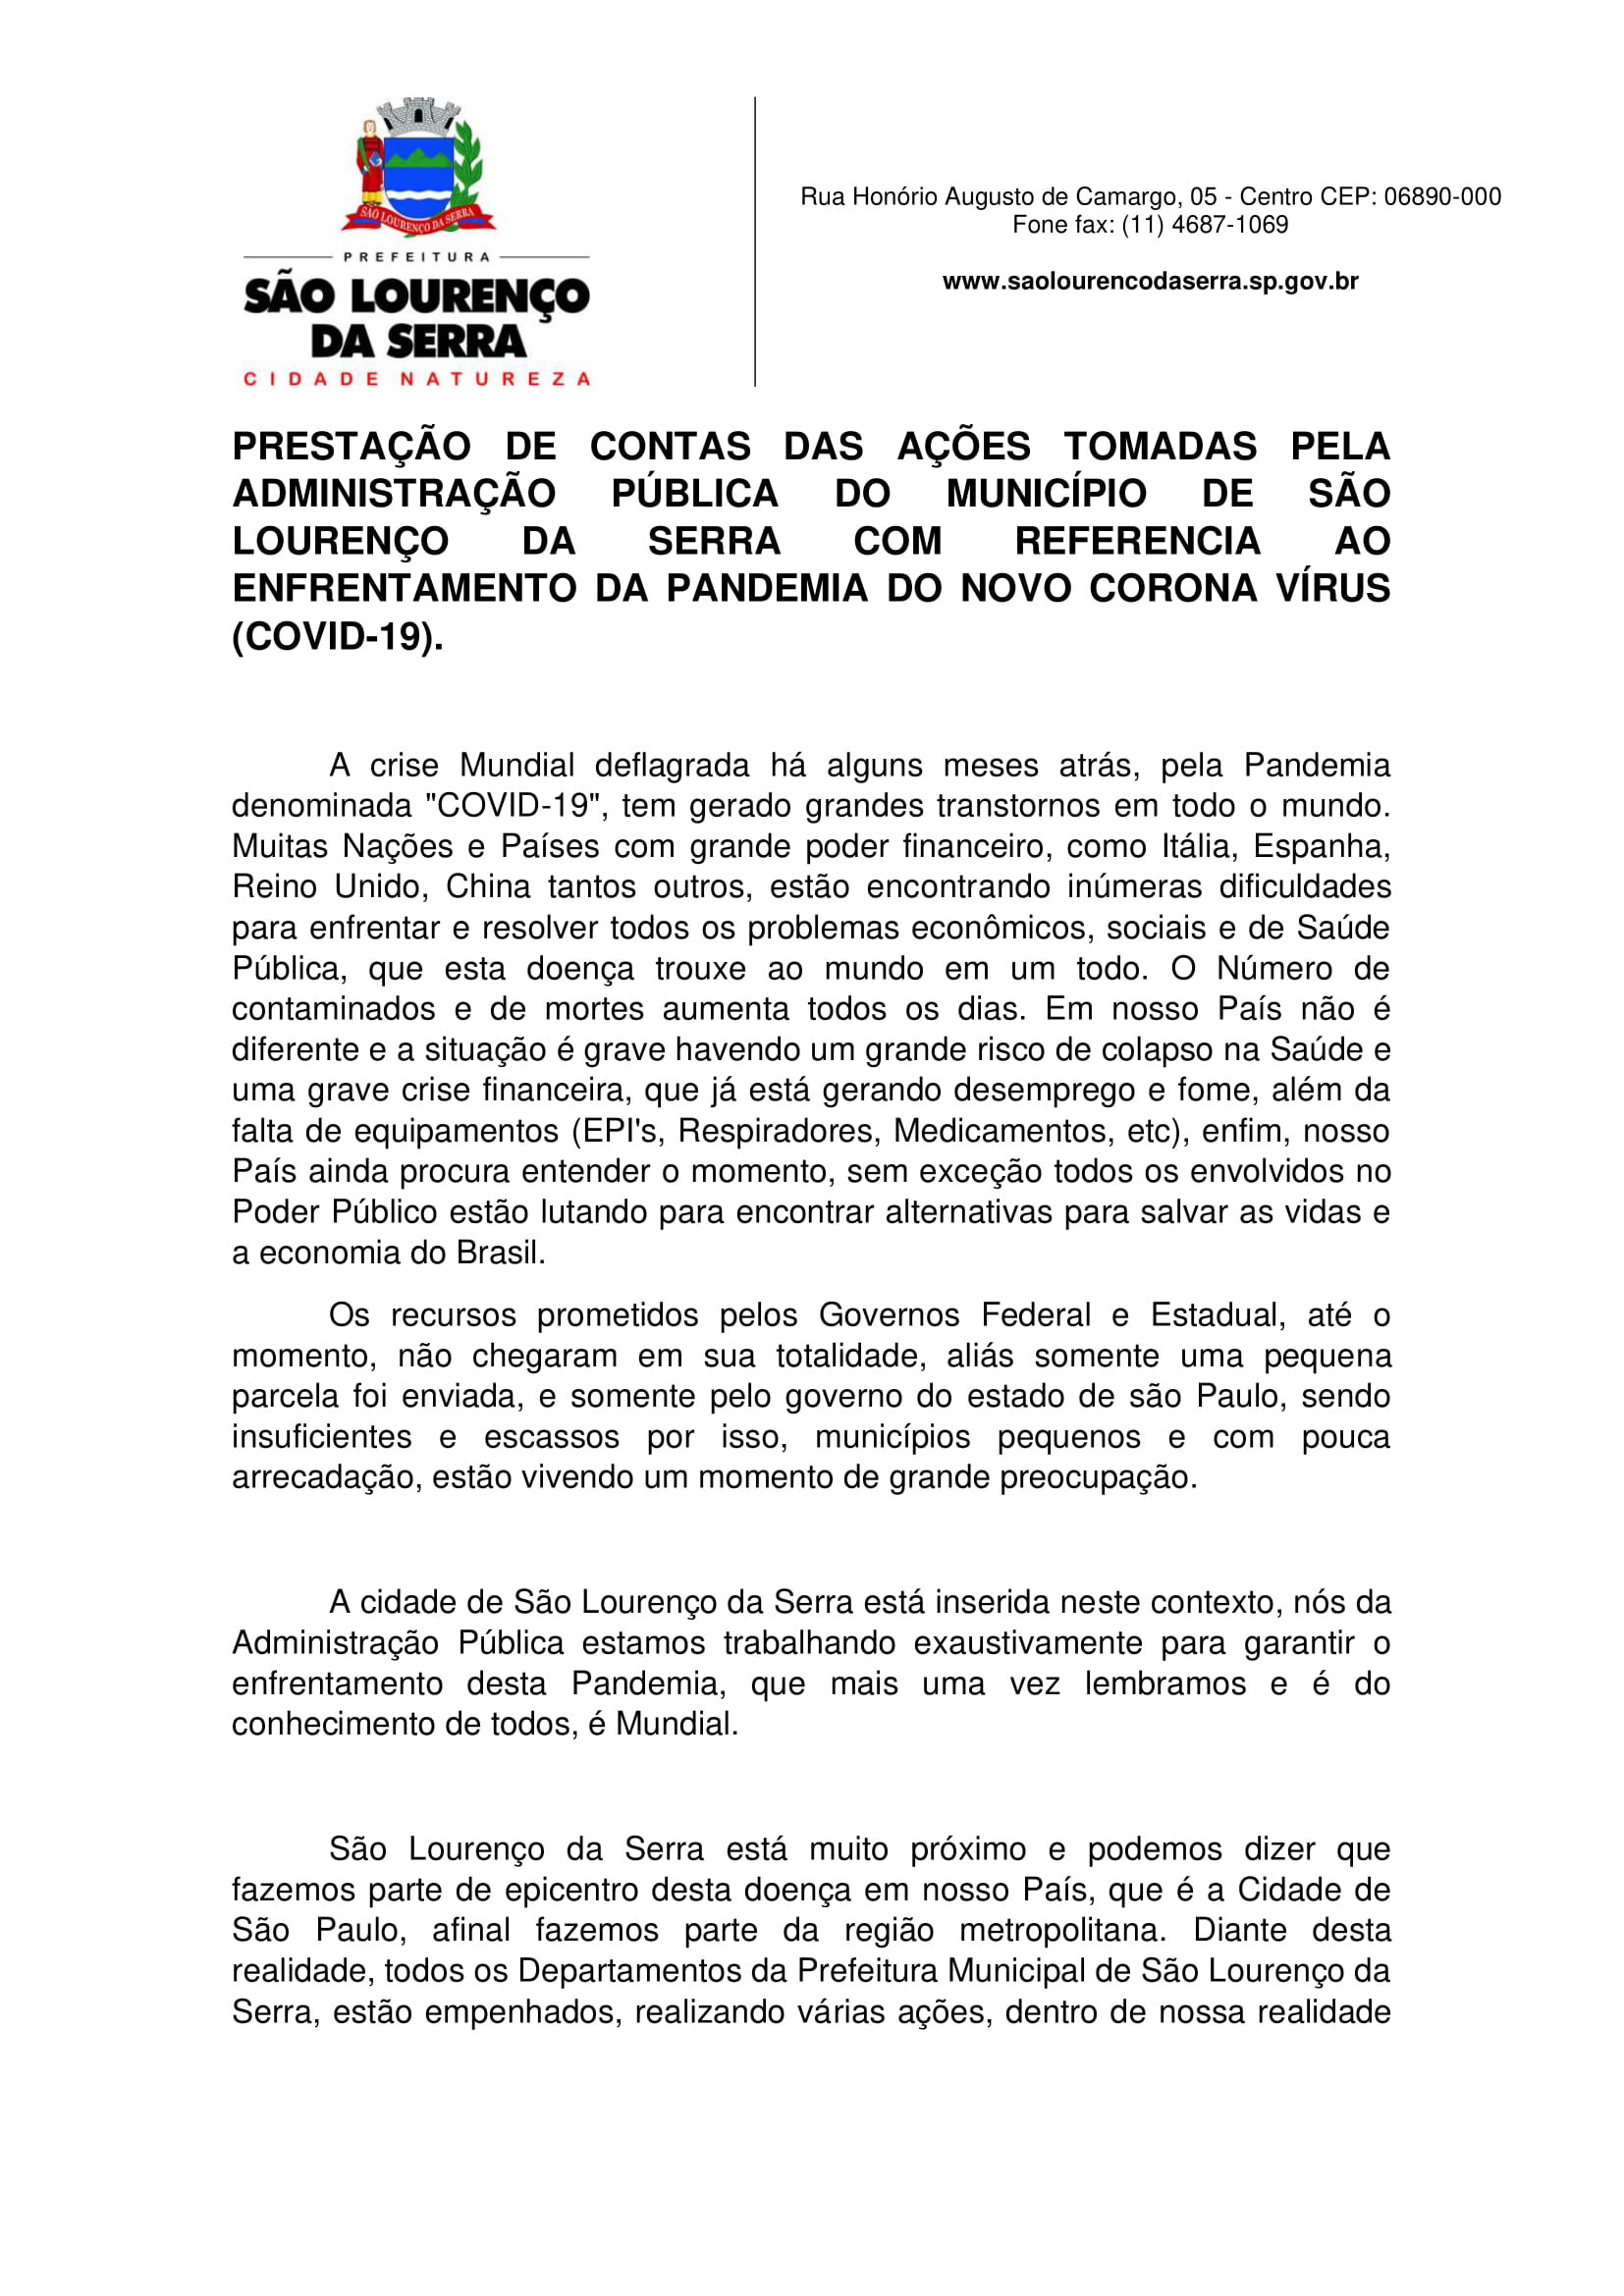 PRESTAÇÃO DE CONTAS PREFEITURA DE ITAPEVI 008 by Prefeitura de